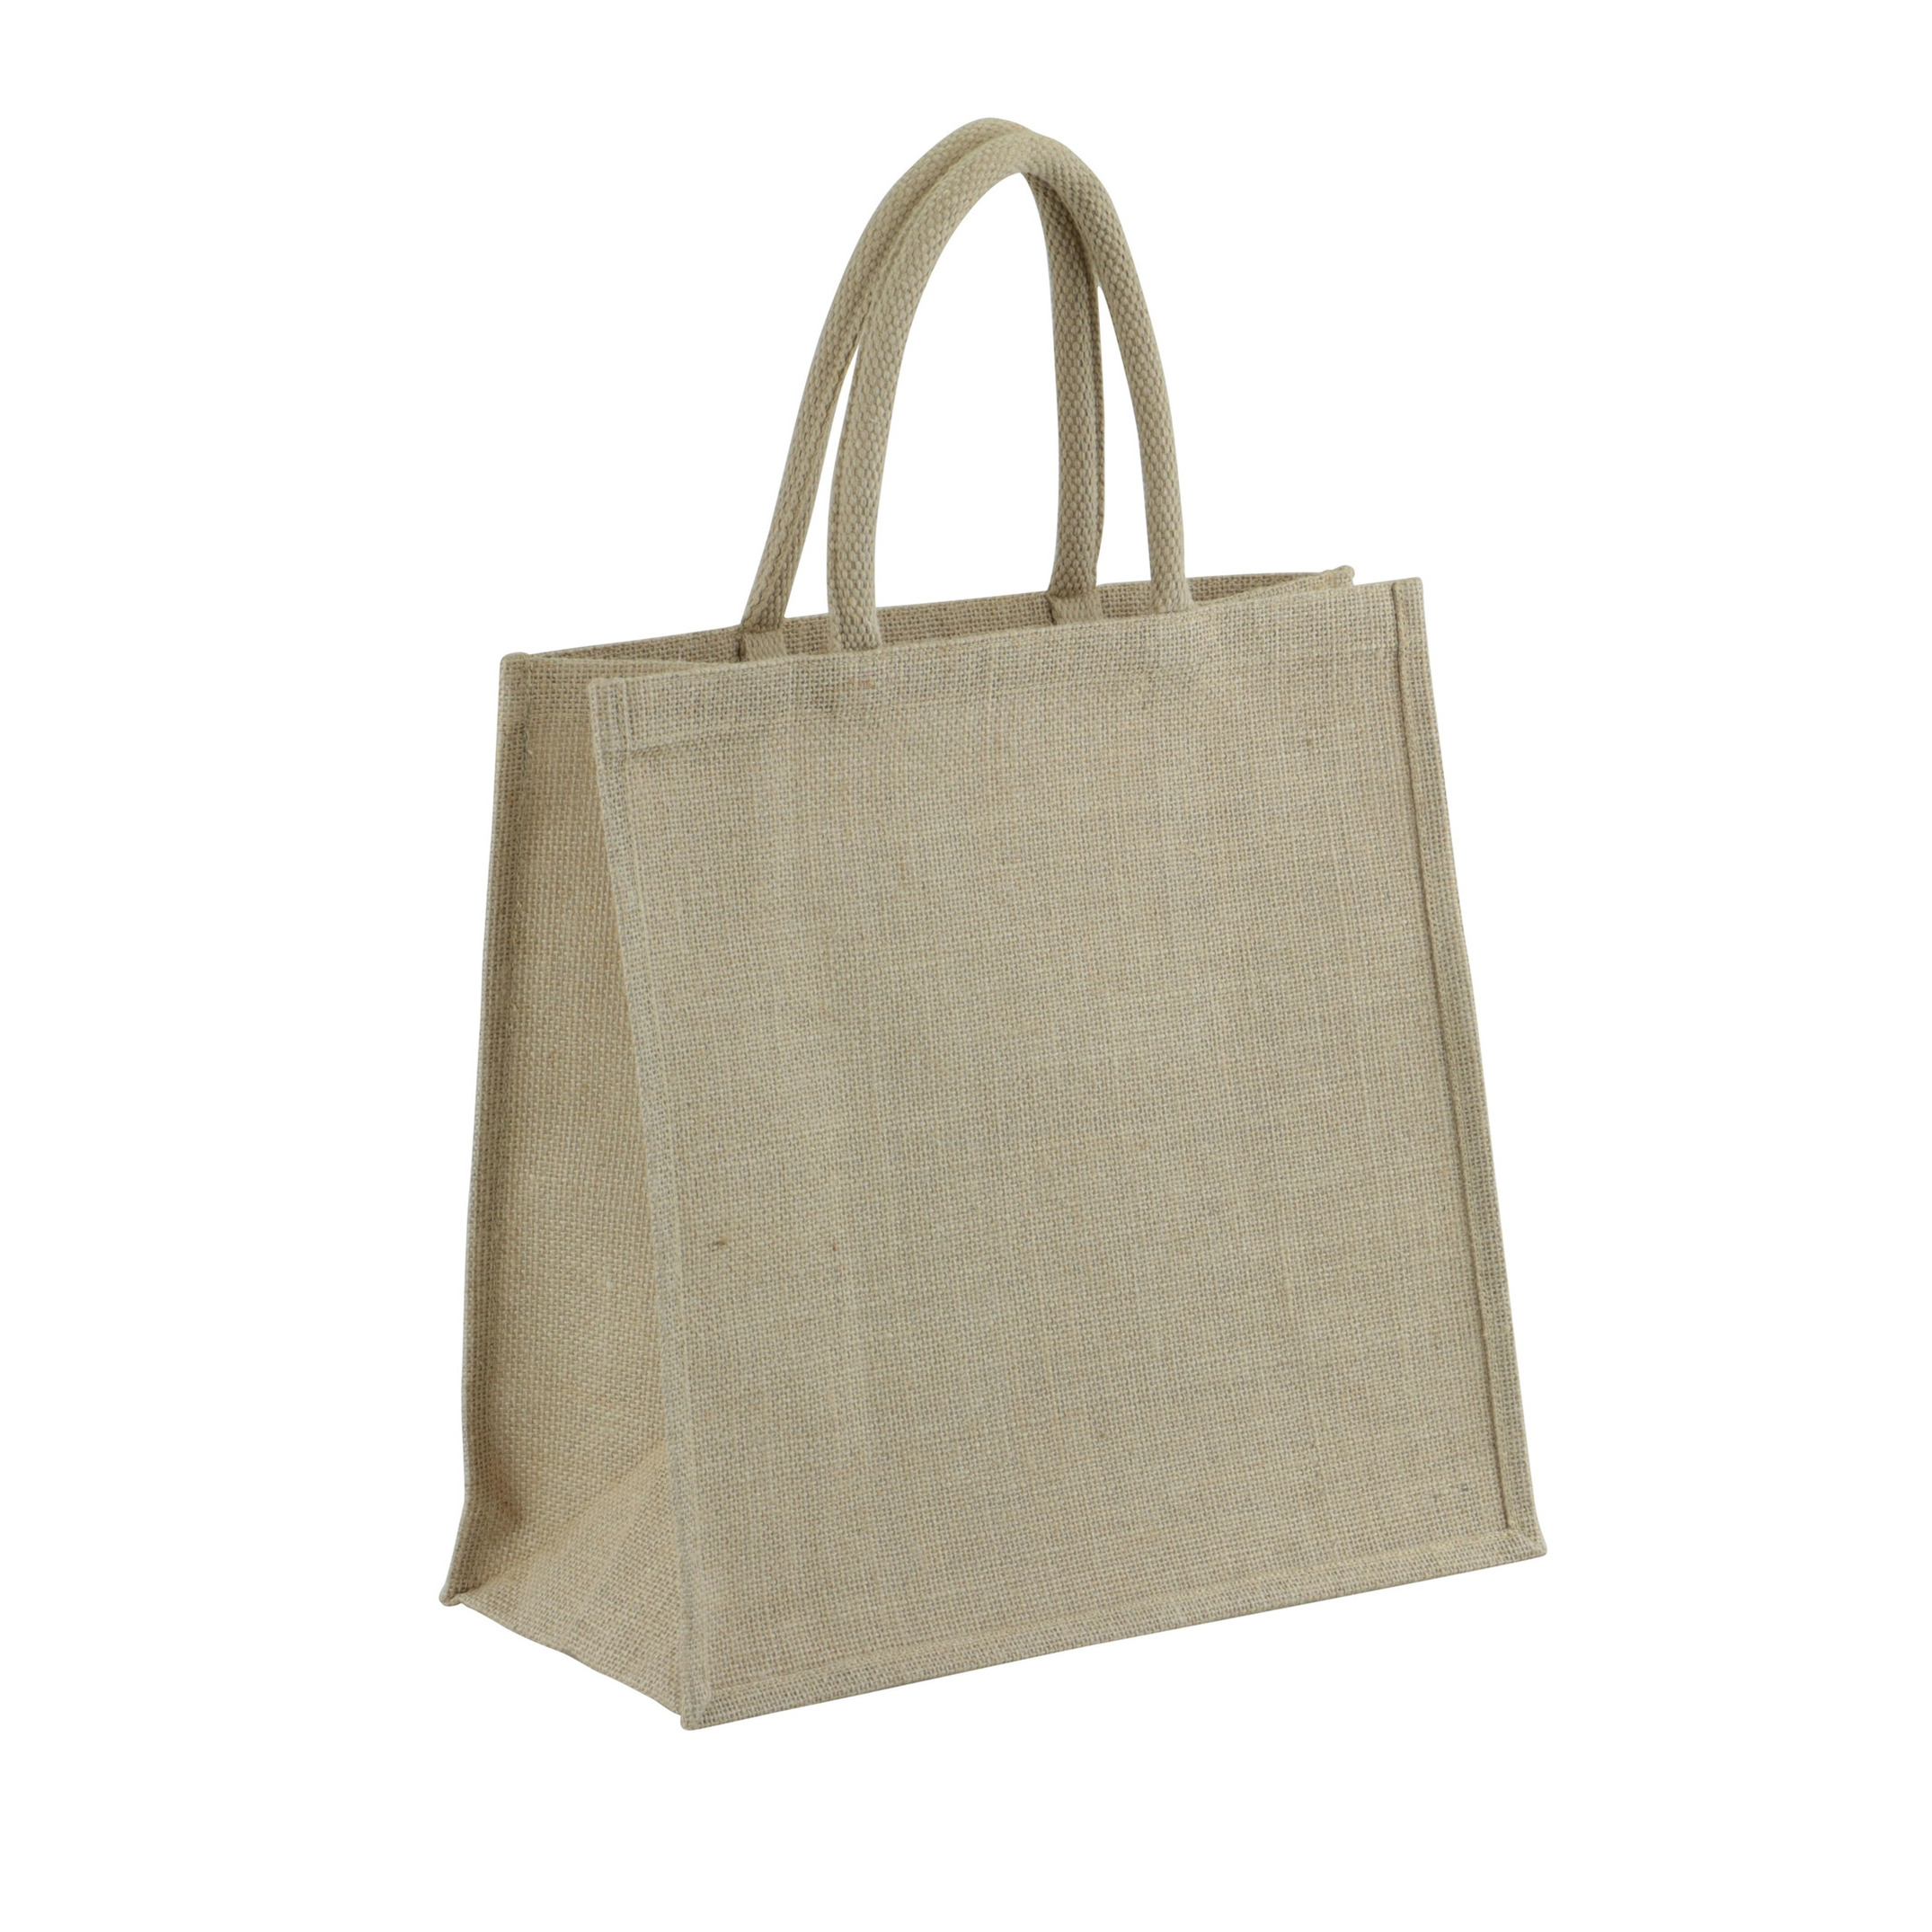 1x Jute eco boodschappentassen-strandtassen-draagtassen 35 x 34 cm naturel